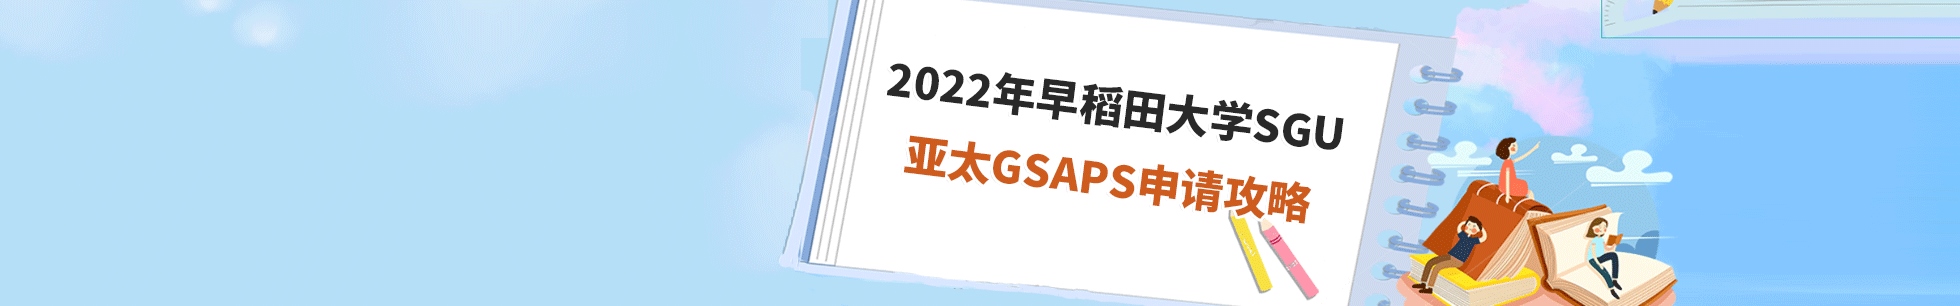 2022年早稻田大学sgu亚太GSAPS申请攻略